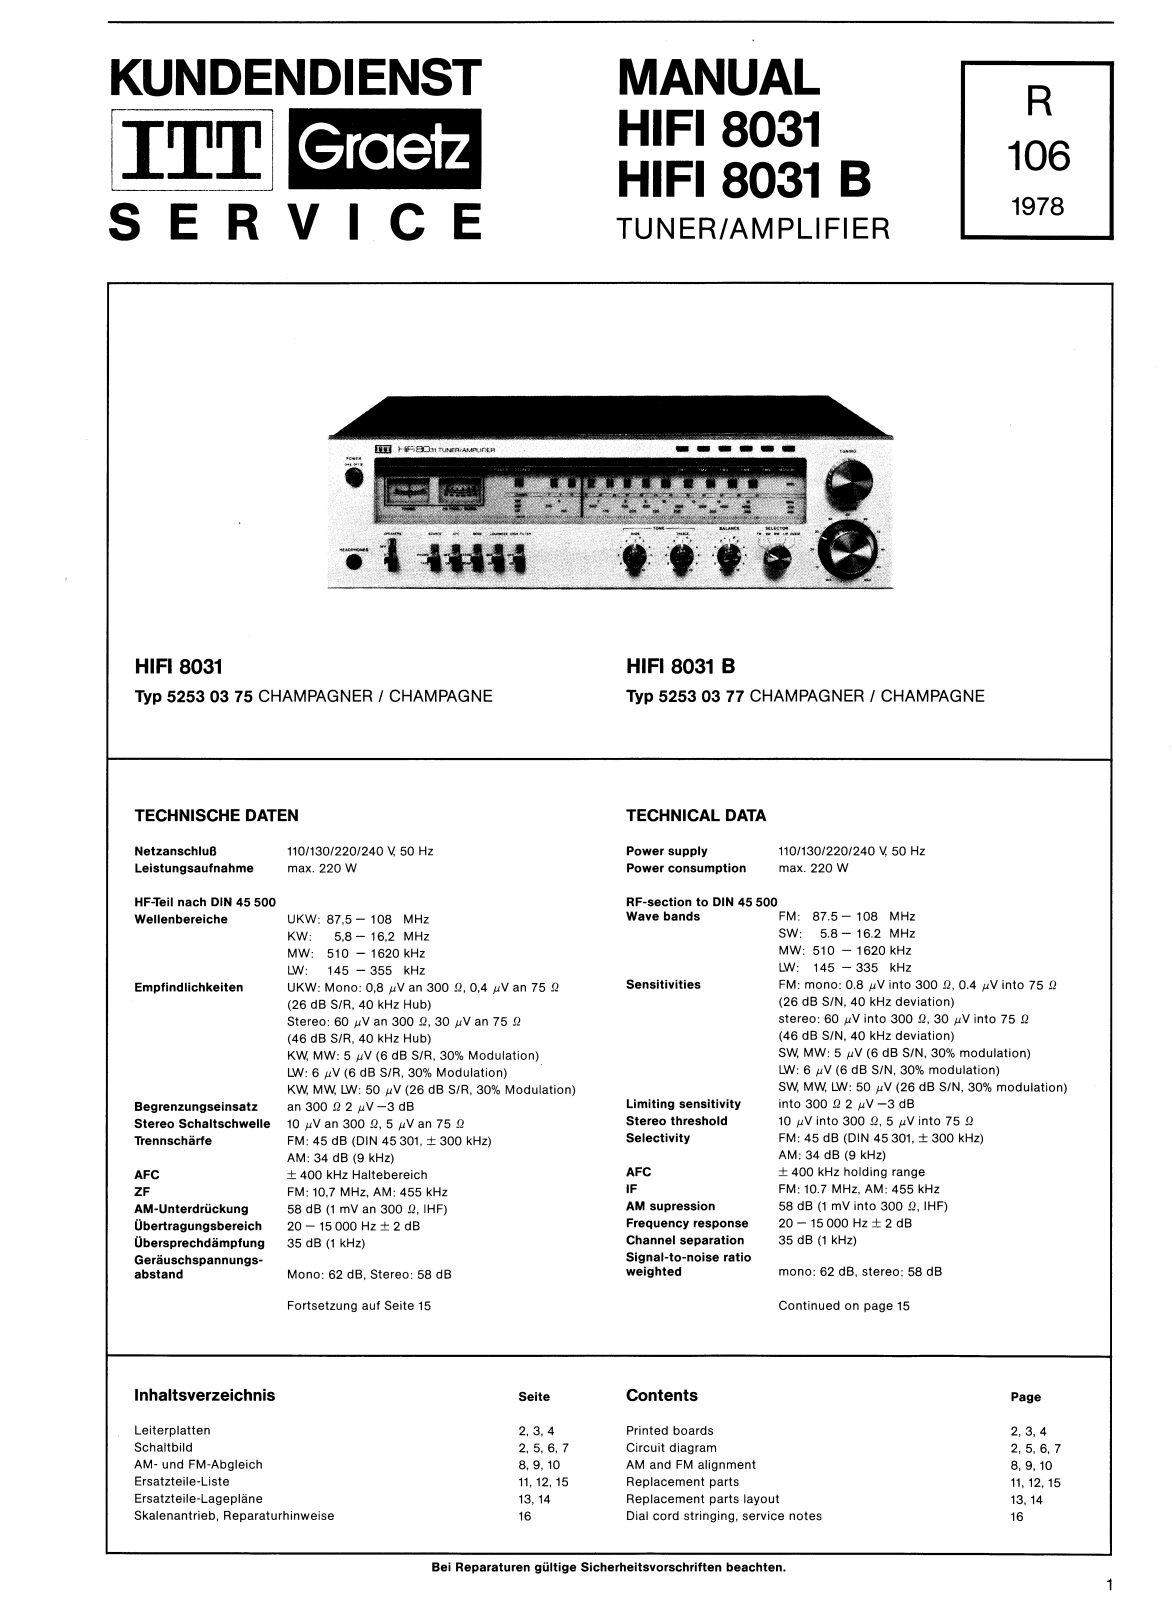 ITT hifi 8031, hifi 8031a Service Manual